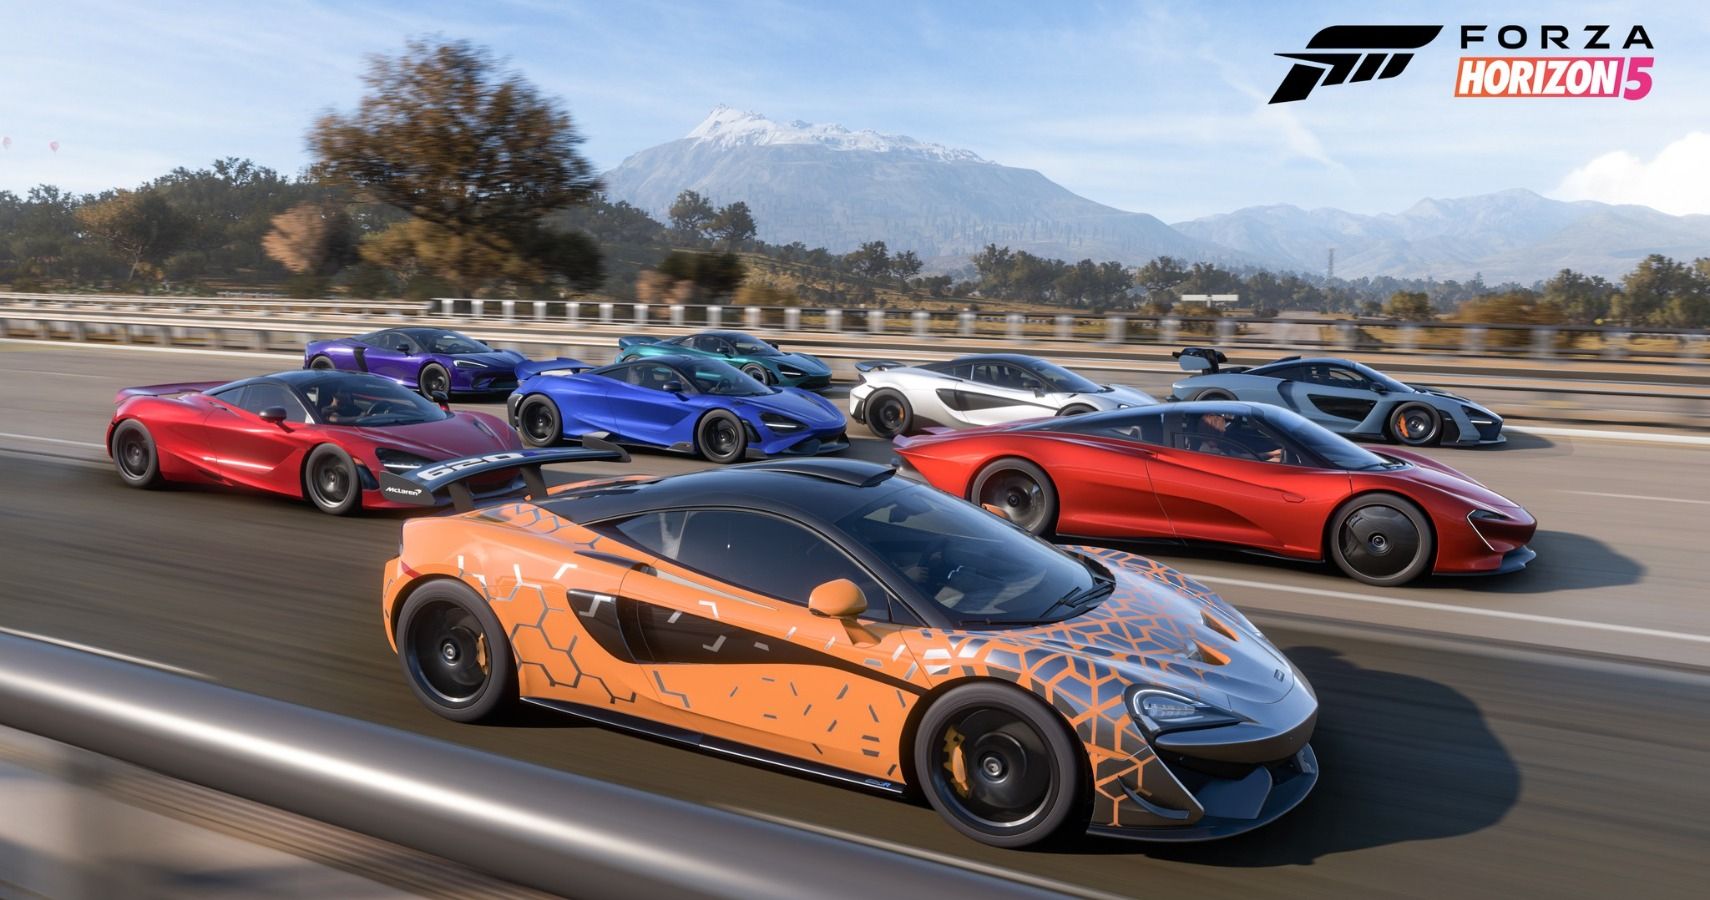 Forza Horizon 6: Everything We Know So Far